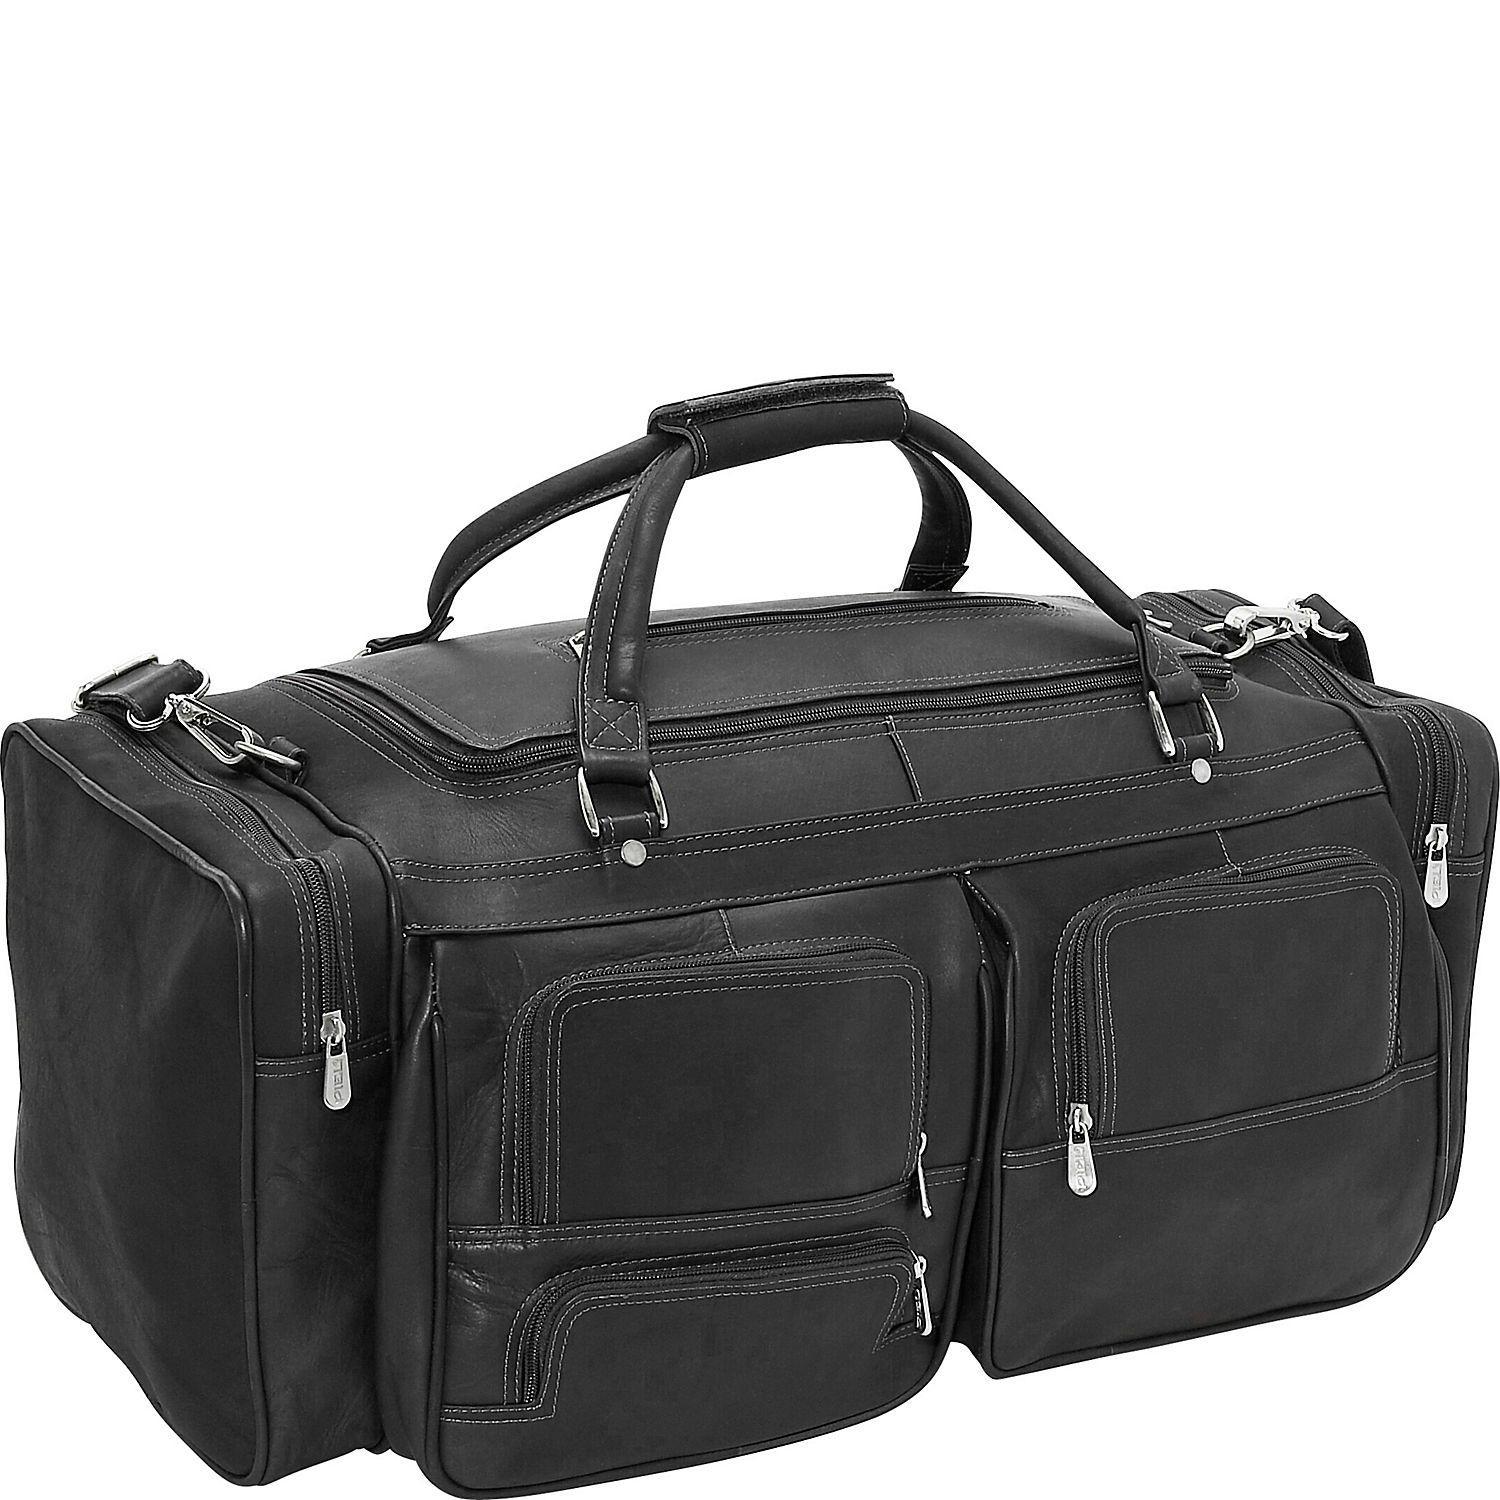 Piel 24 Duffel with Pockets – Luggage Pros